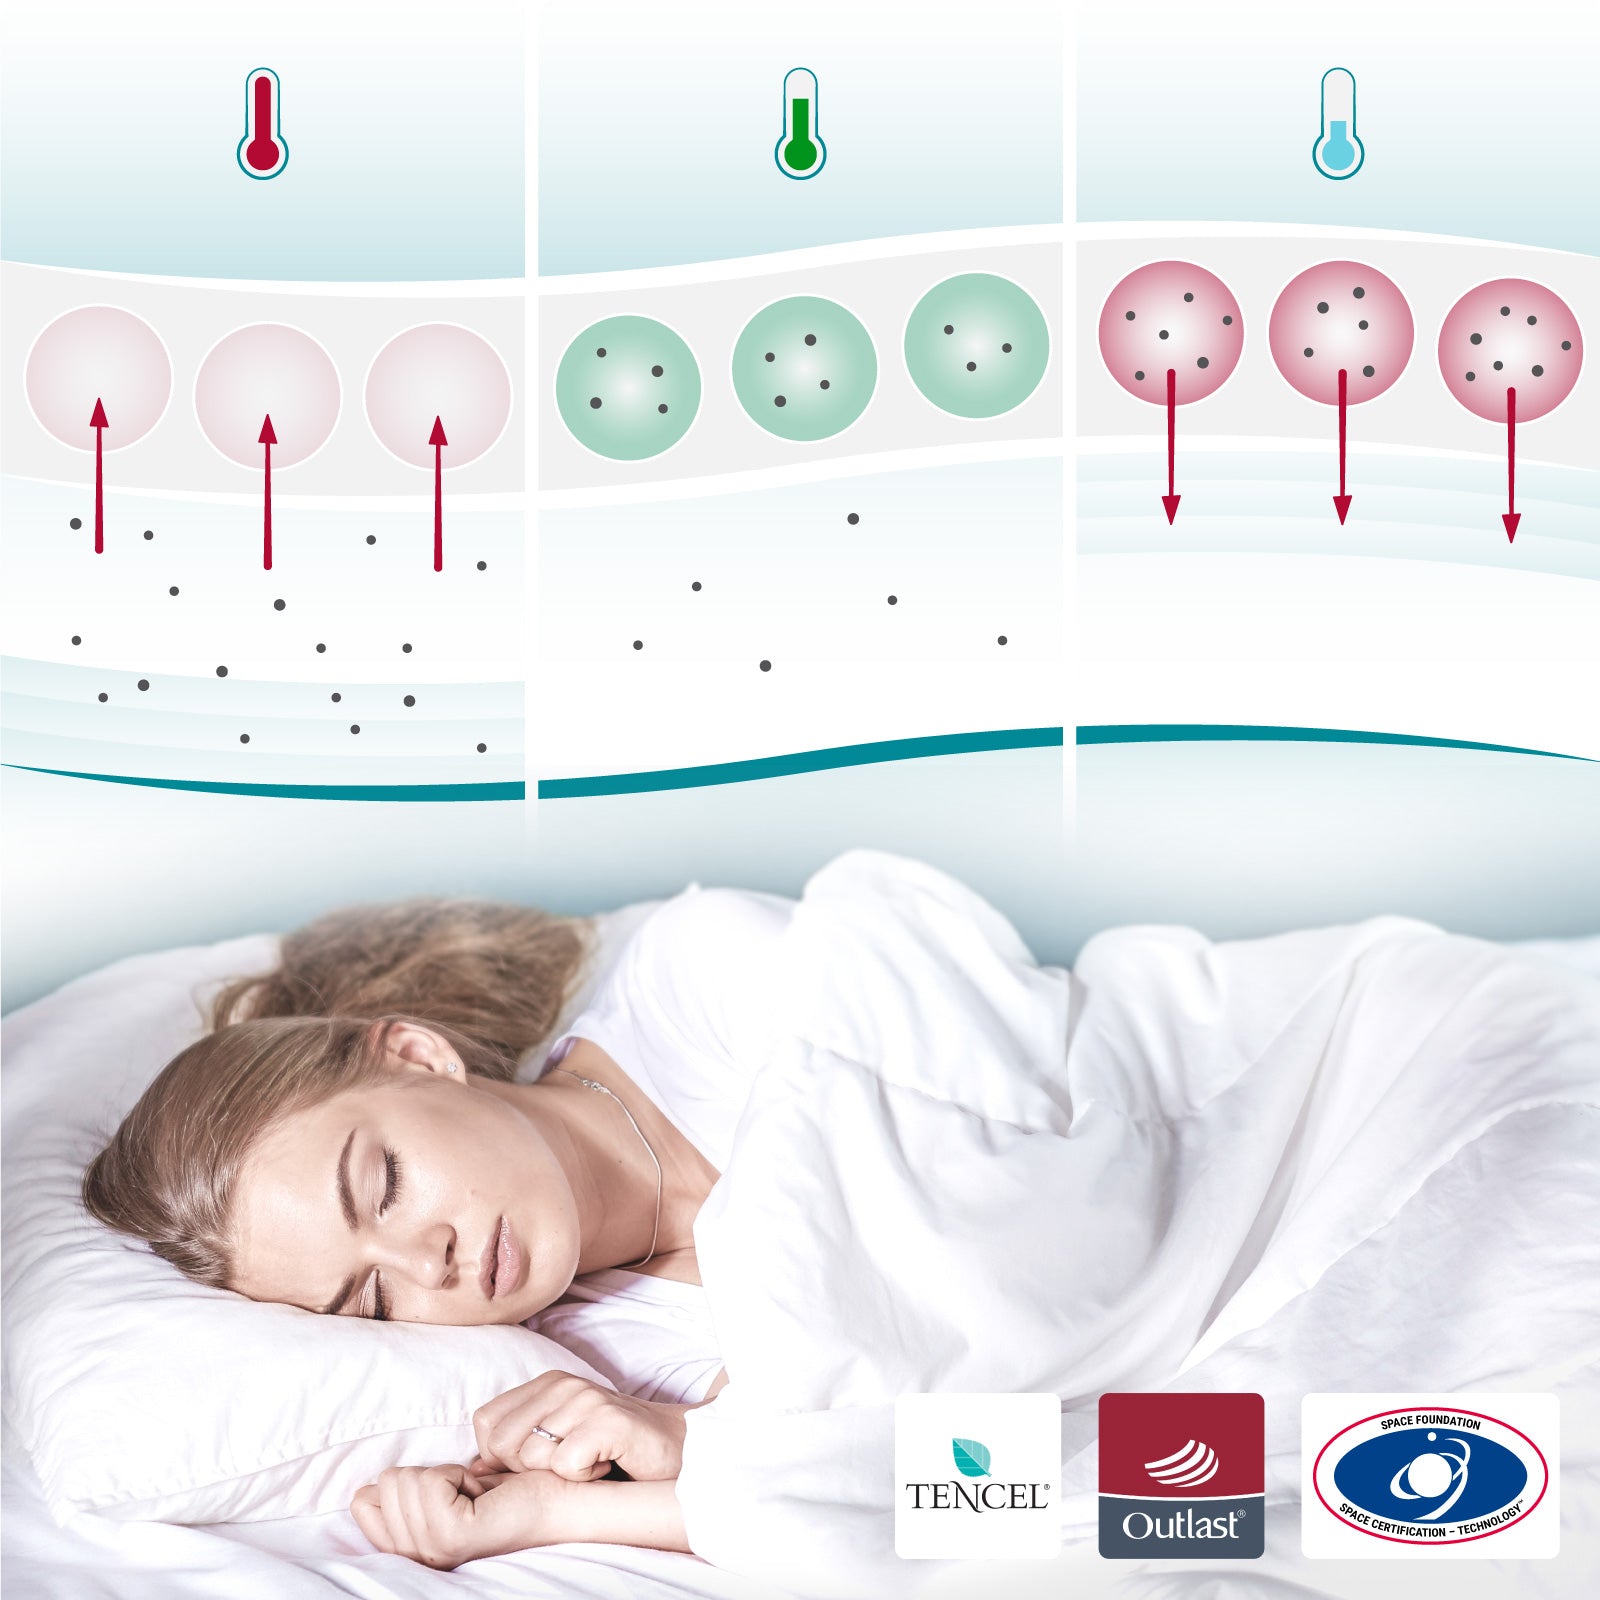 Temperaturregulierende Bettdecke (1000g-1200g) - COOL.XPRESSION - Weniger schwitzen, weniger frieren, besser schlafen